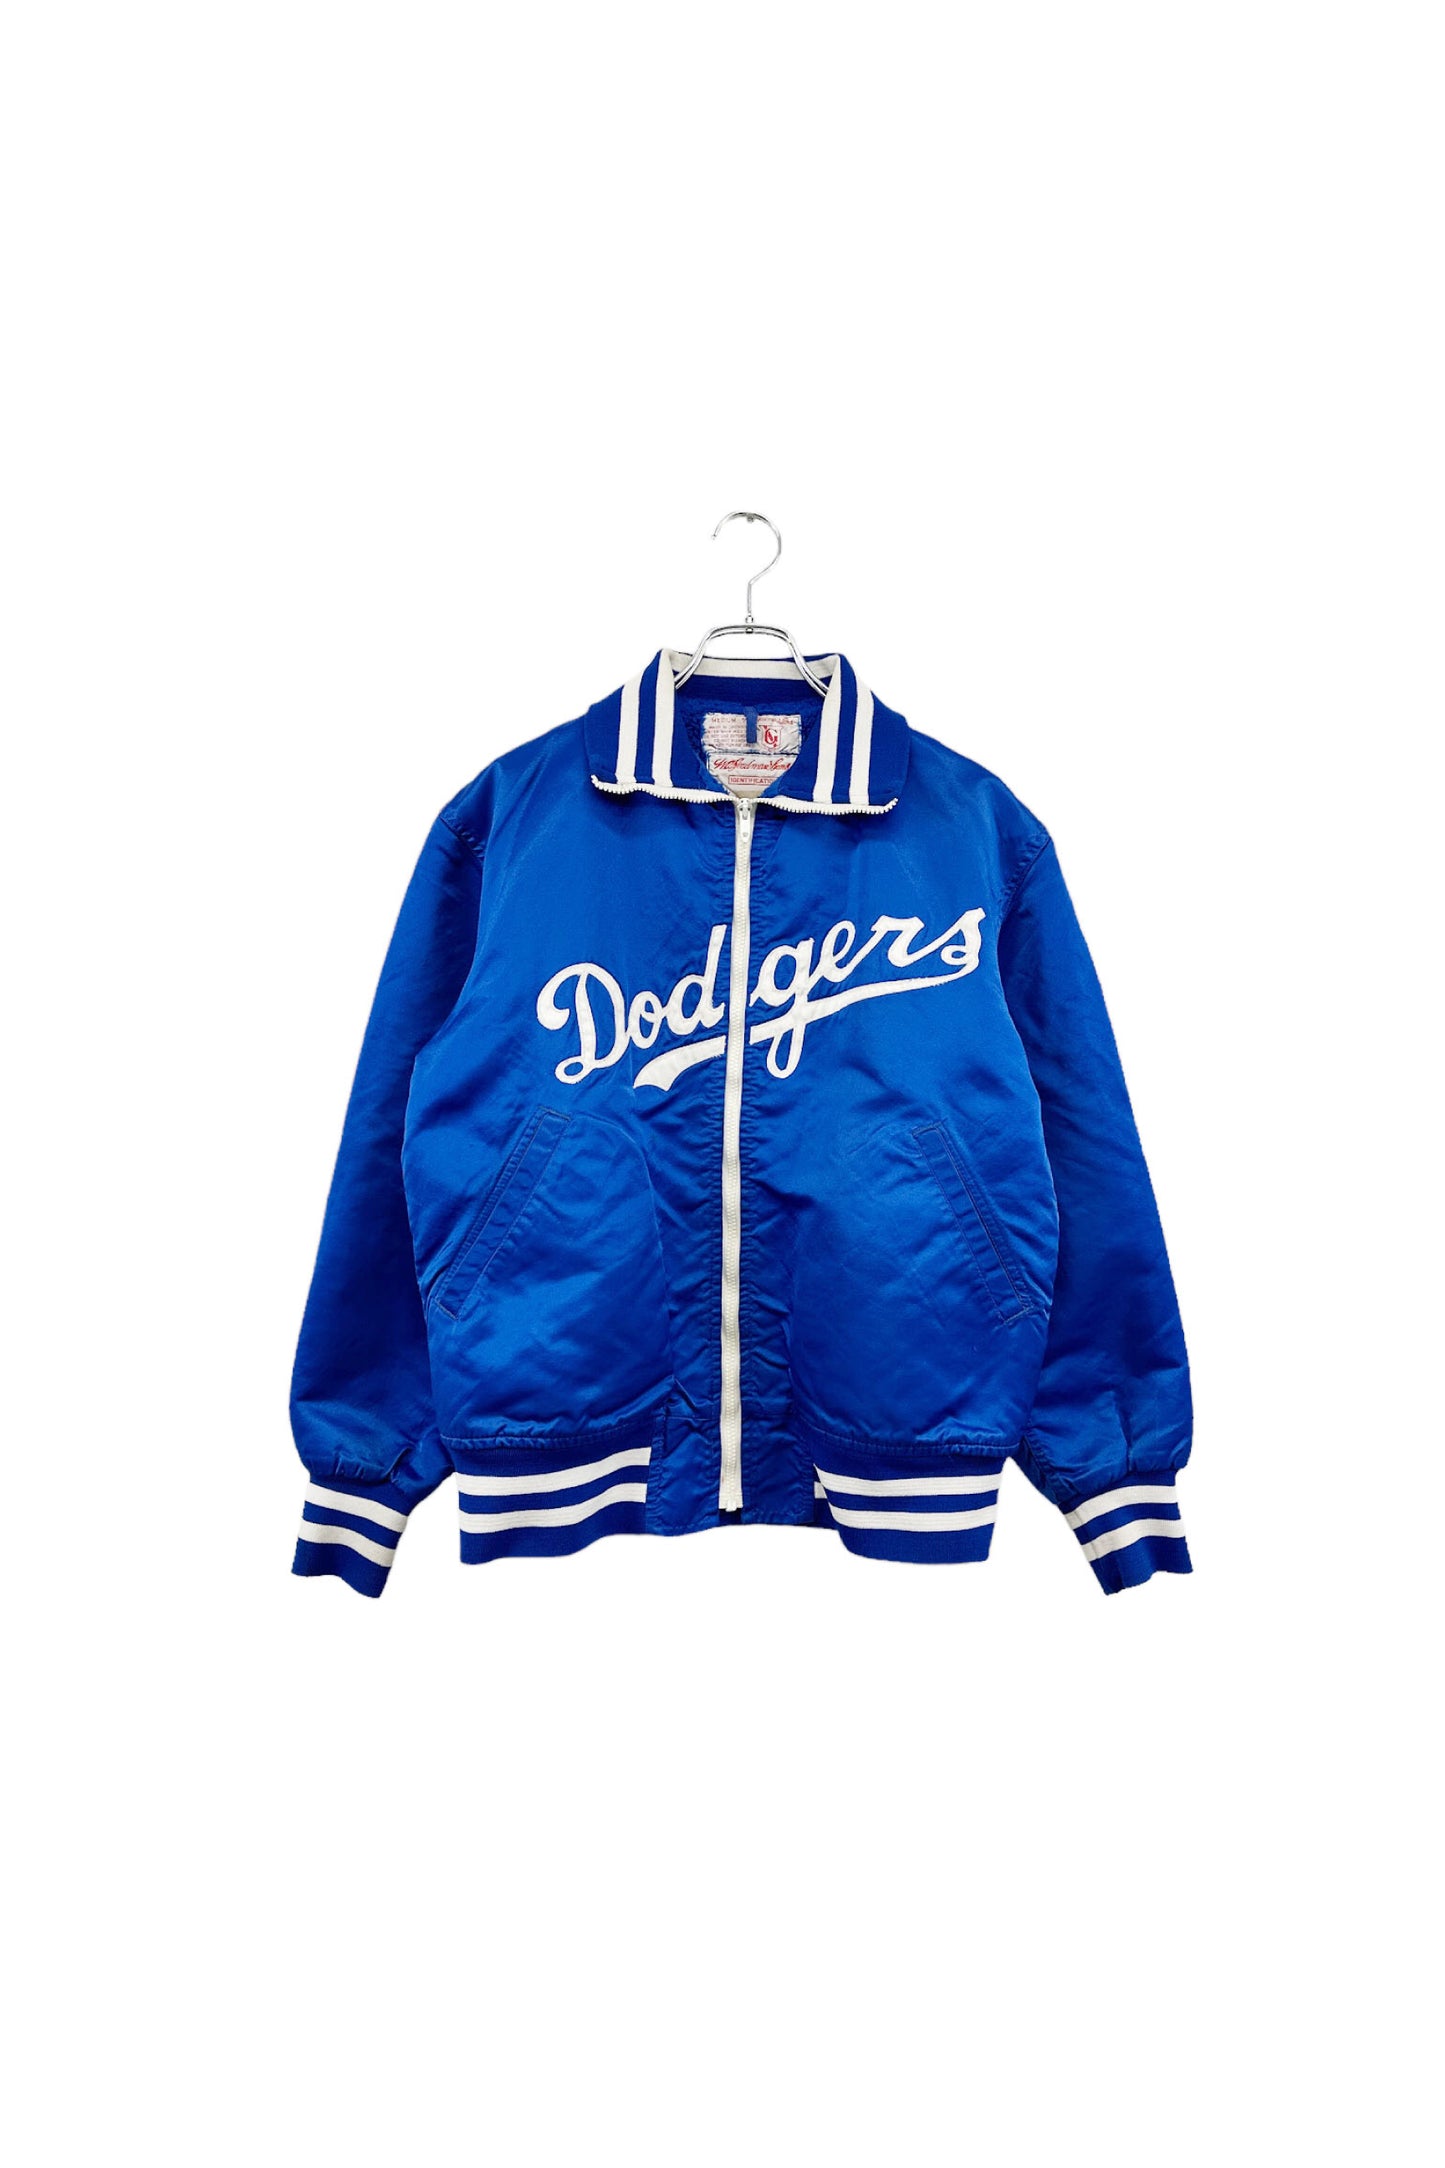 90's Los Angeles Dodgers stadium jacket